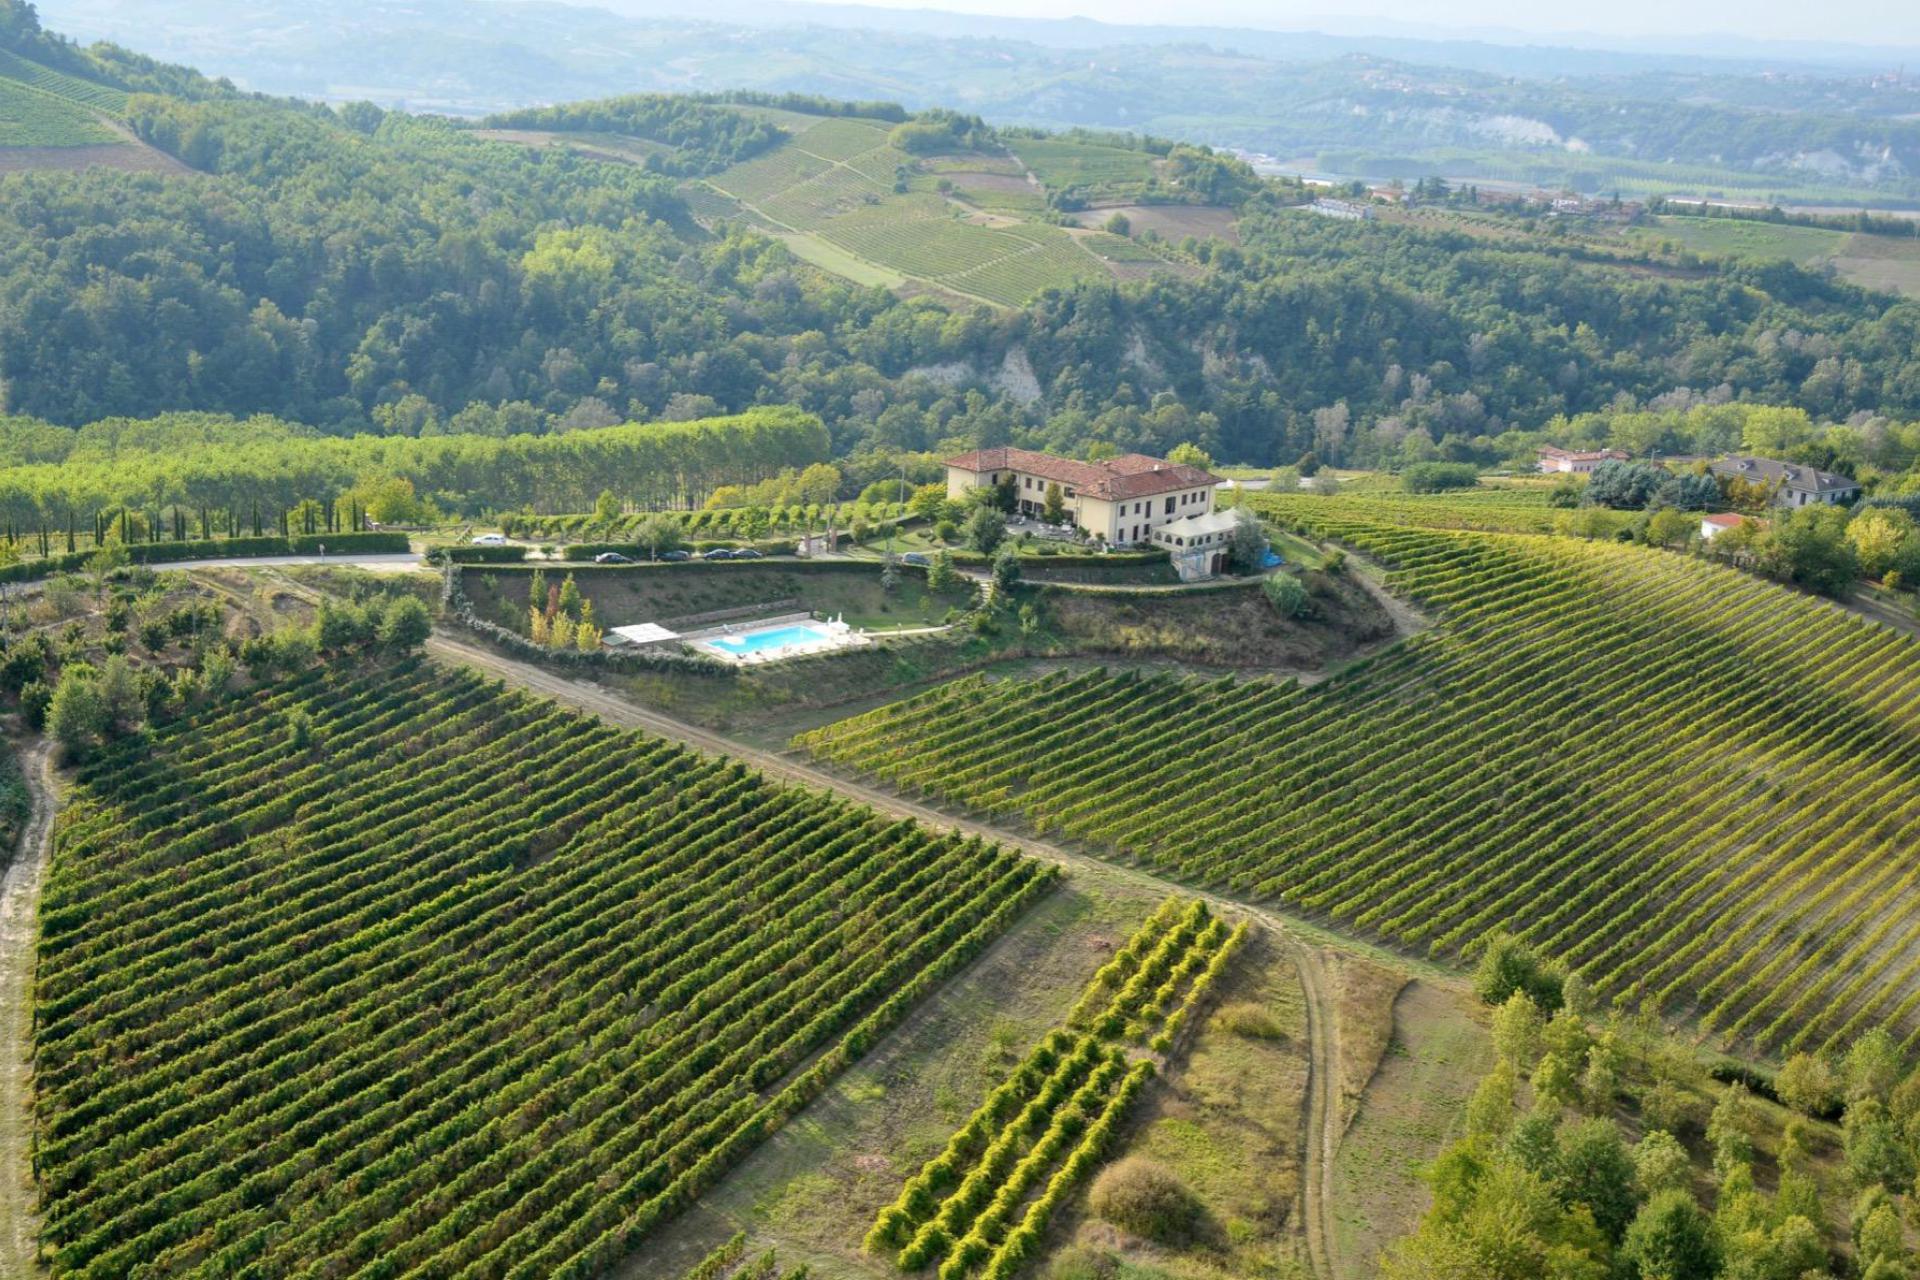 Agriturismo Piemonte Agriturismo Piemonte voor liefhebbers van goede wijn